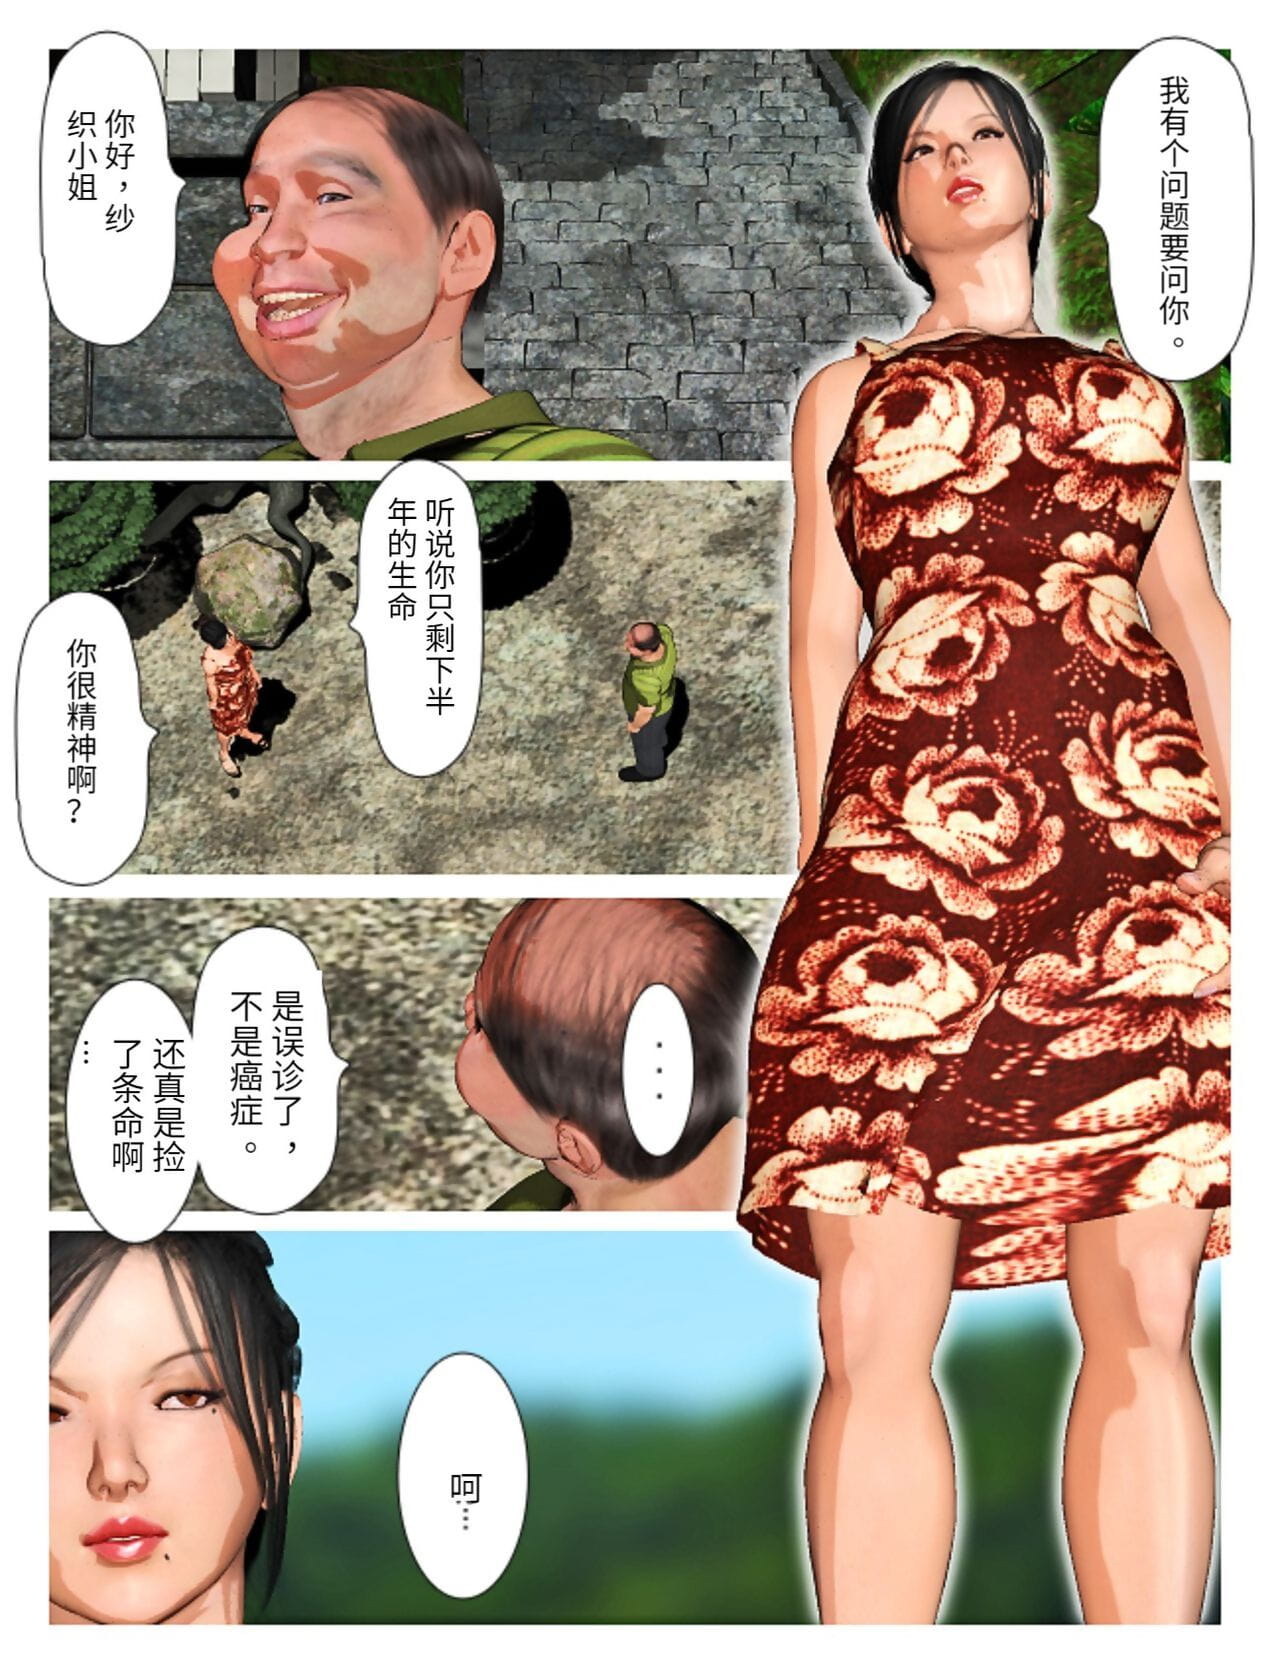 Kyou pas de misako san 2019:4 PARTIE 3 page 1